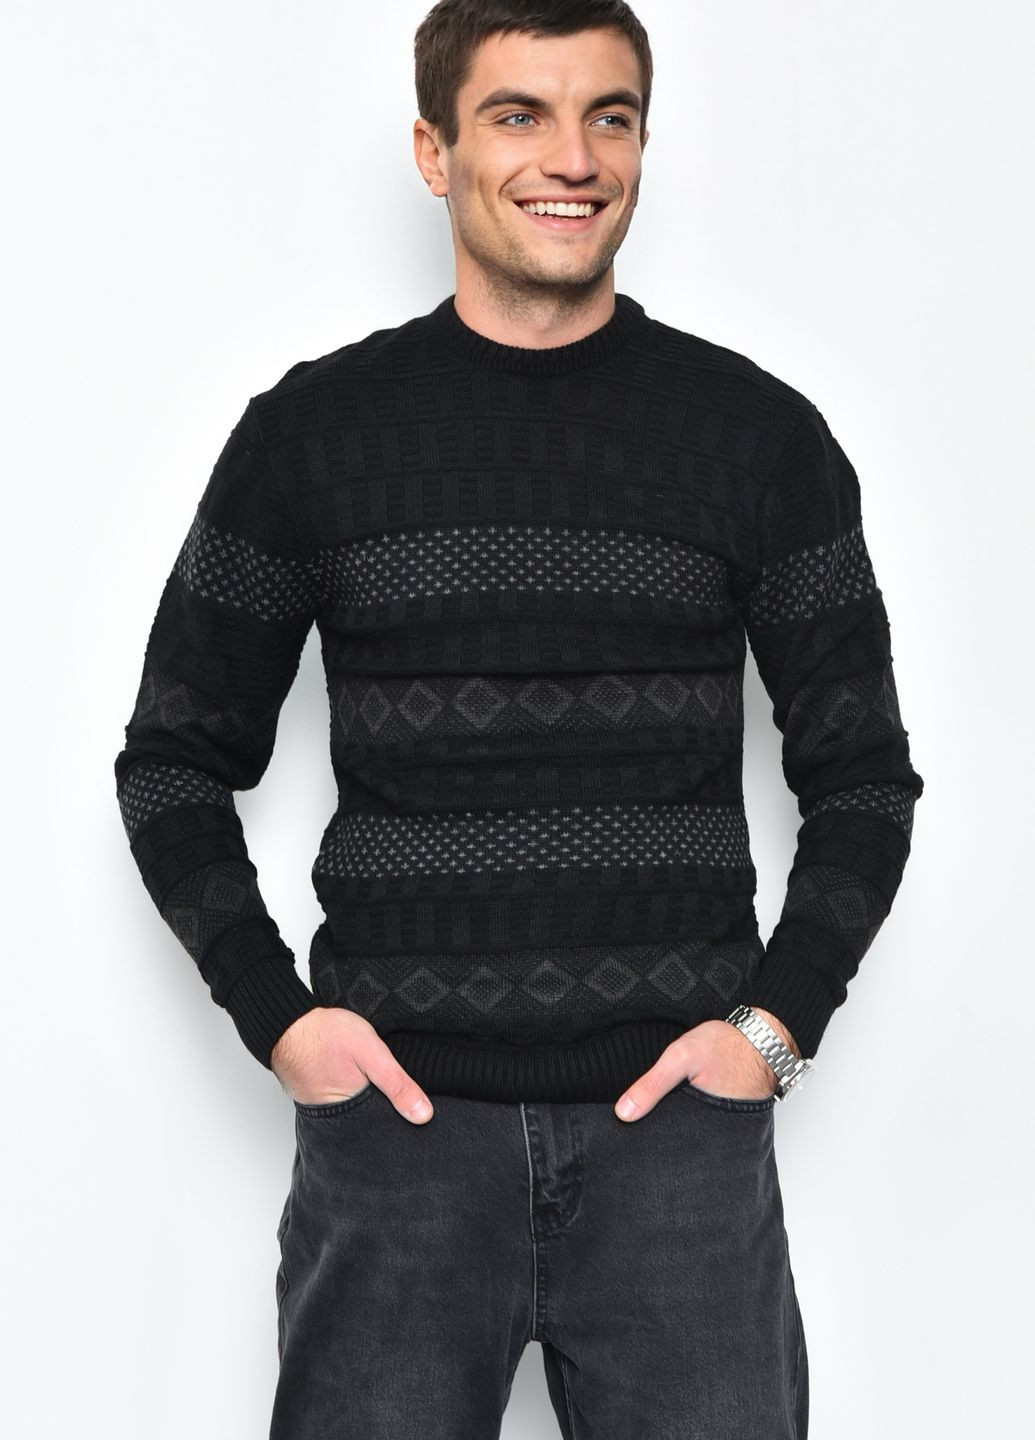 Черный демисезонный свитер мужской черного цвета акриловый пуловер Let's Shop